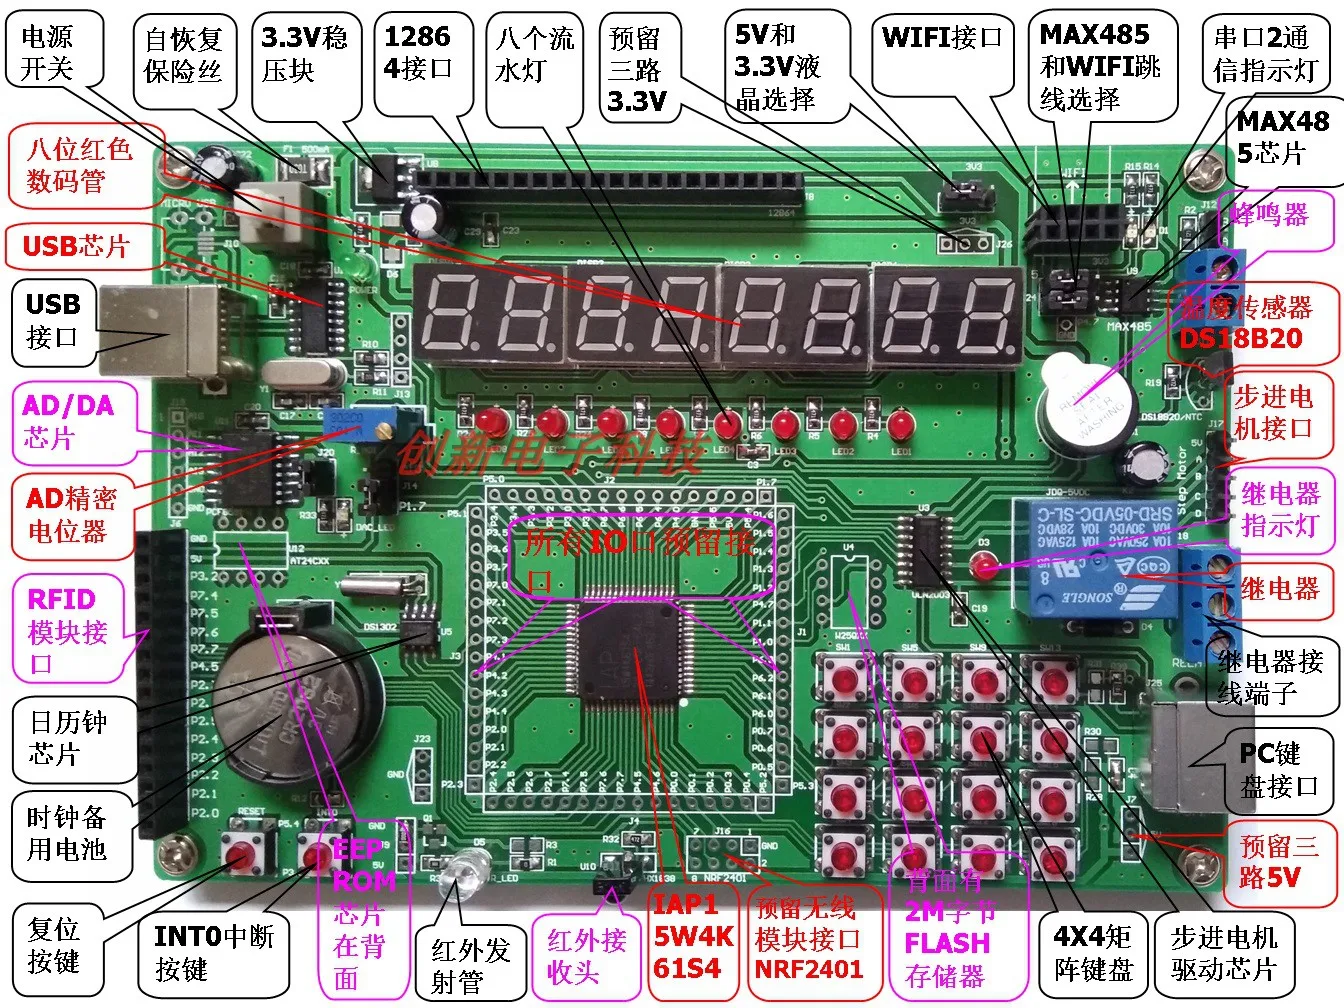 51-microordenador-de-un-solo-chip-iap-stc-15-series-placa-de-desarrollo-placa-de-experimento-iap15w4k61s4